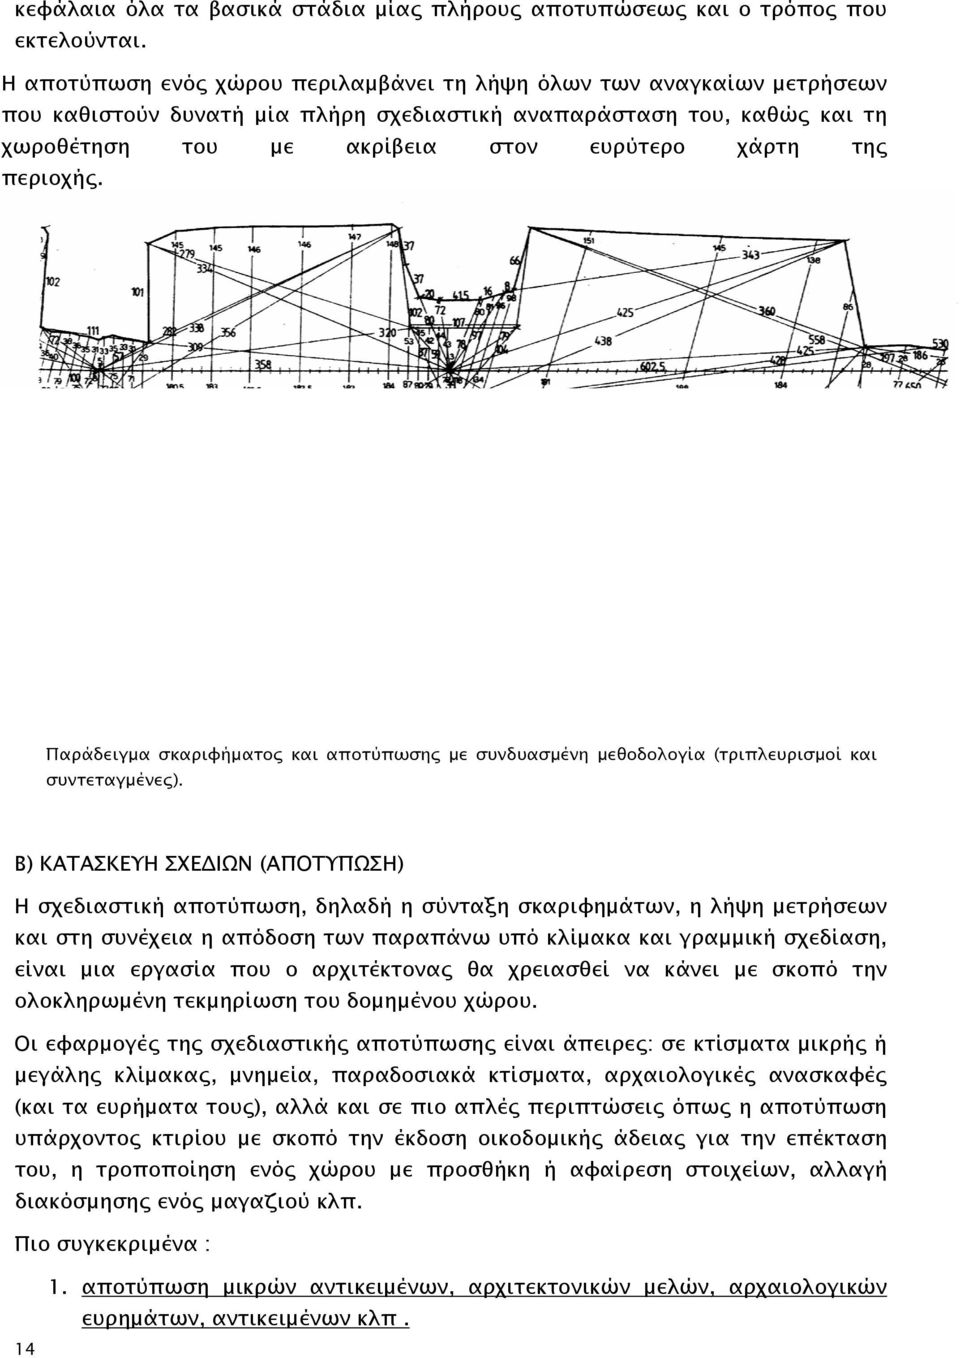 περιοχής. Παράδειγμα σκαριφήματος και αποτύπωσης με συνδυασμένη μεθοδολογία (τριπλευρισμοί και συντεταγμένες).